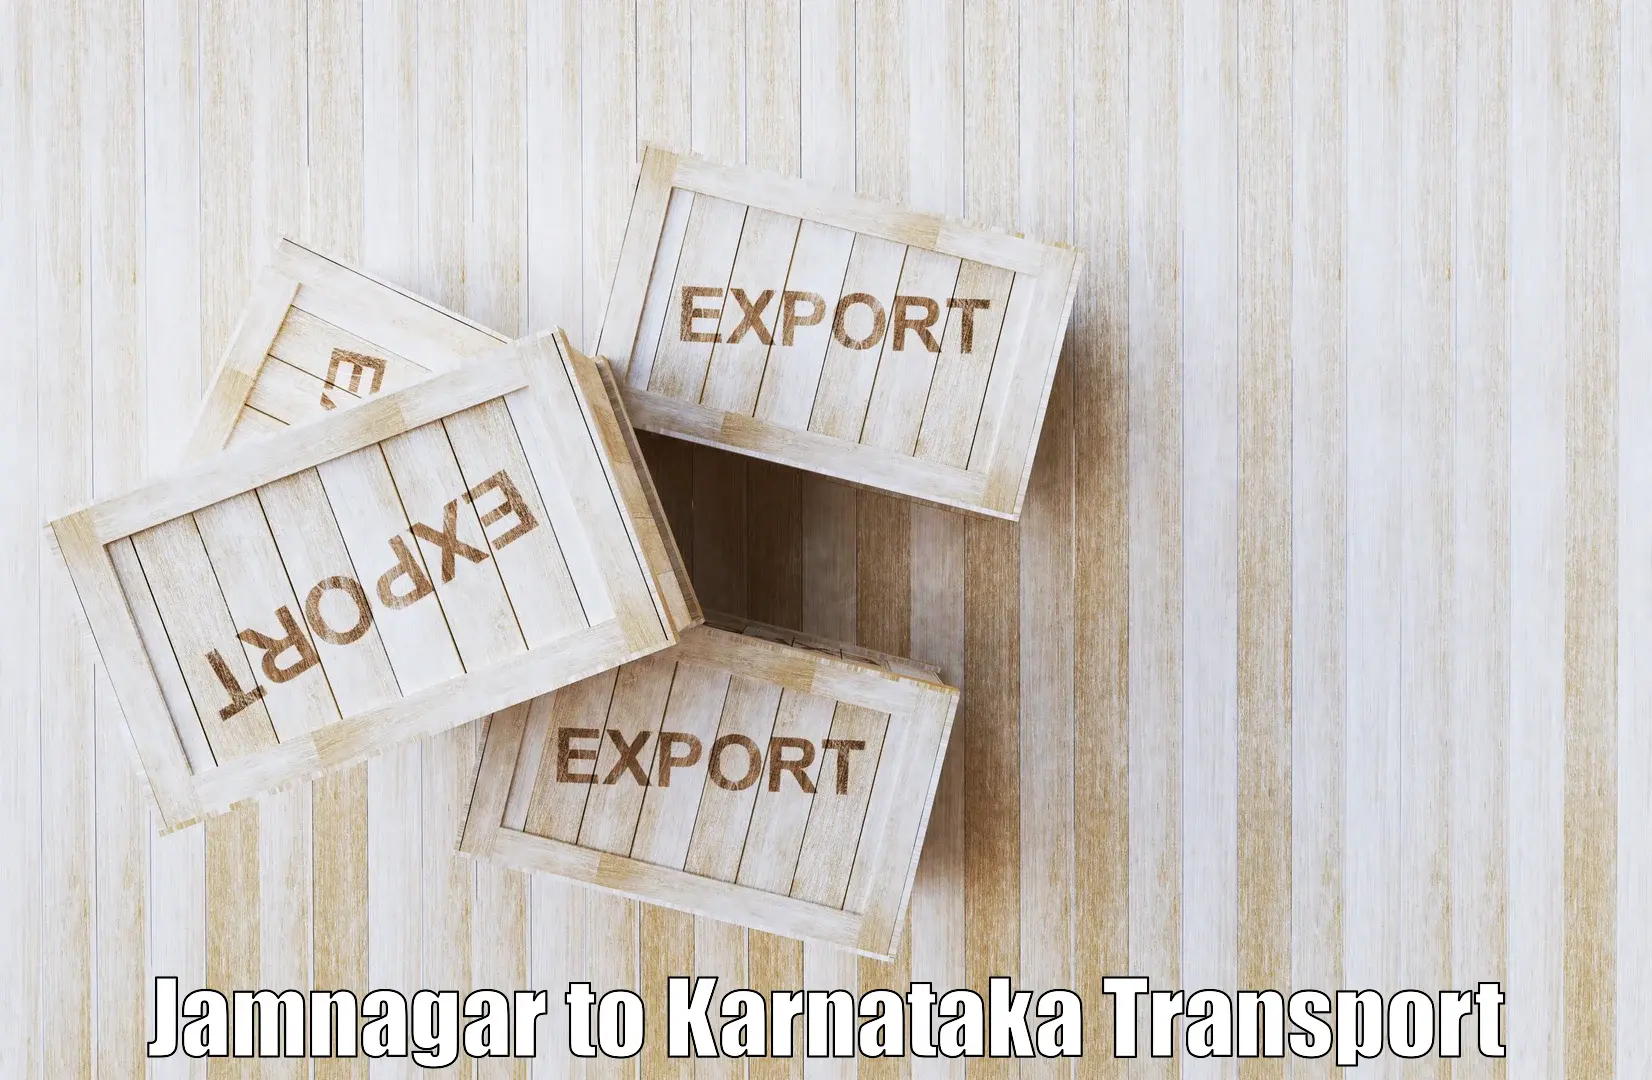 India truck logistics services Jamnagar to Ballari